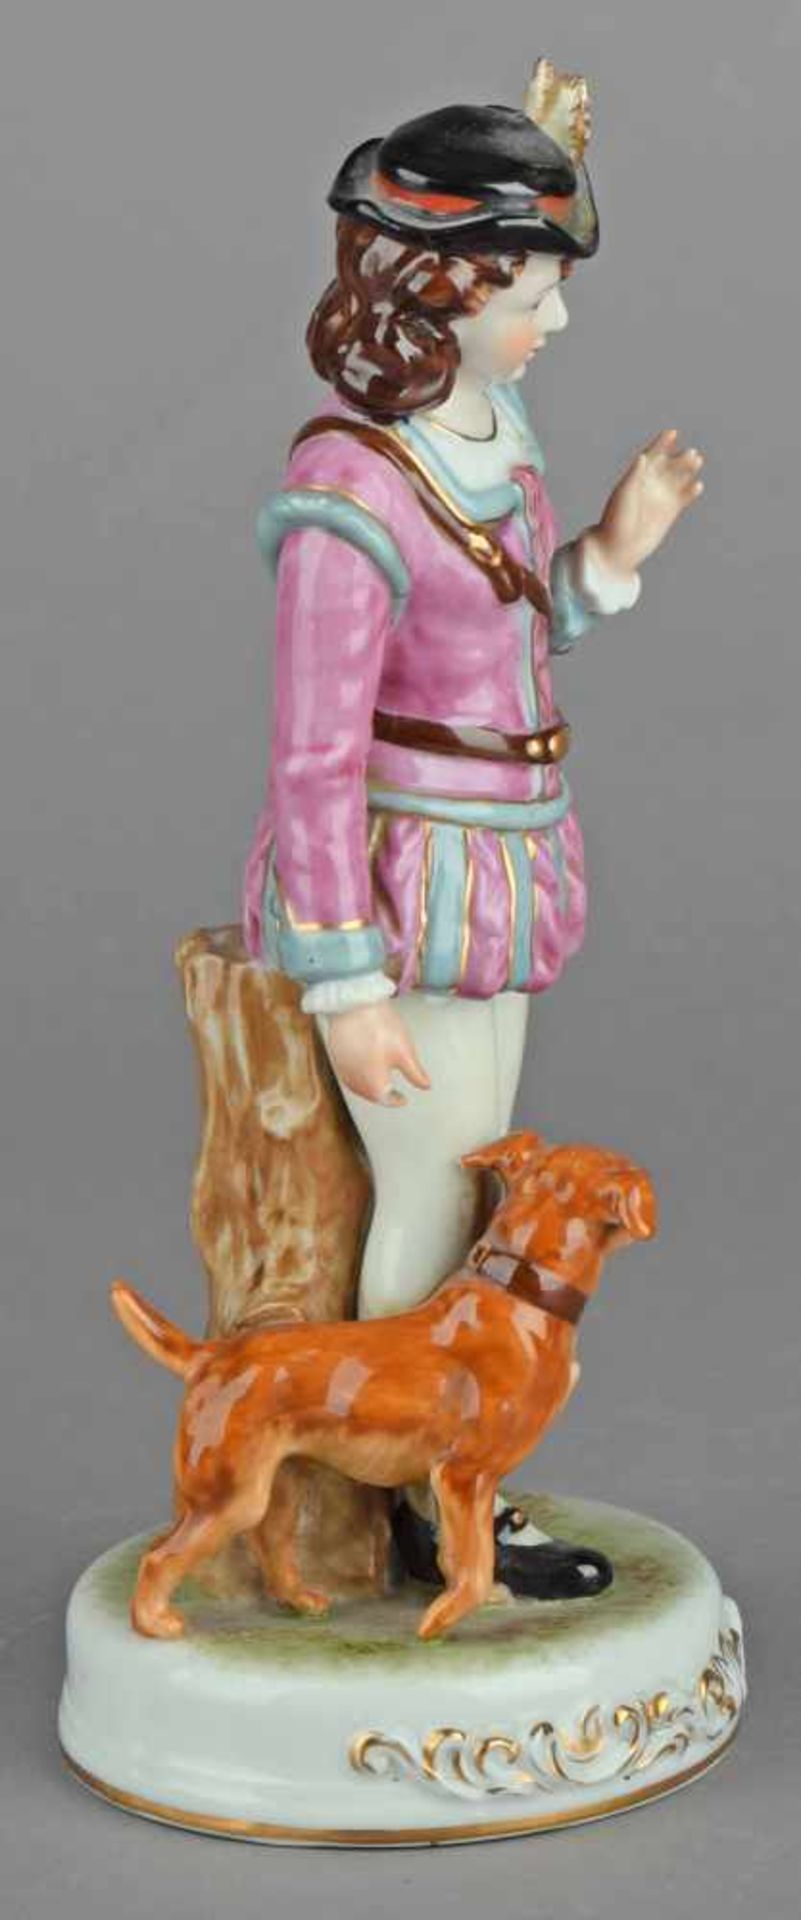 Jäger-Figurine Bodenmarke in Rot "Marurjama Made in Occupied Japan", Dame im stilisierten - Bild 4 aus 4